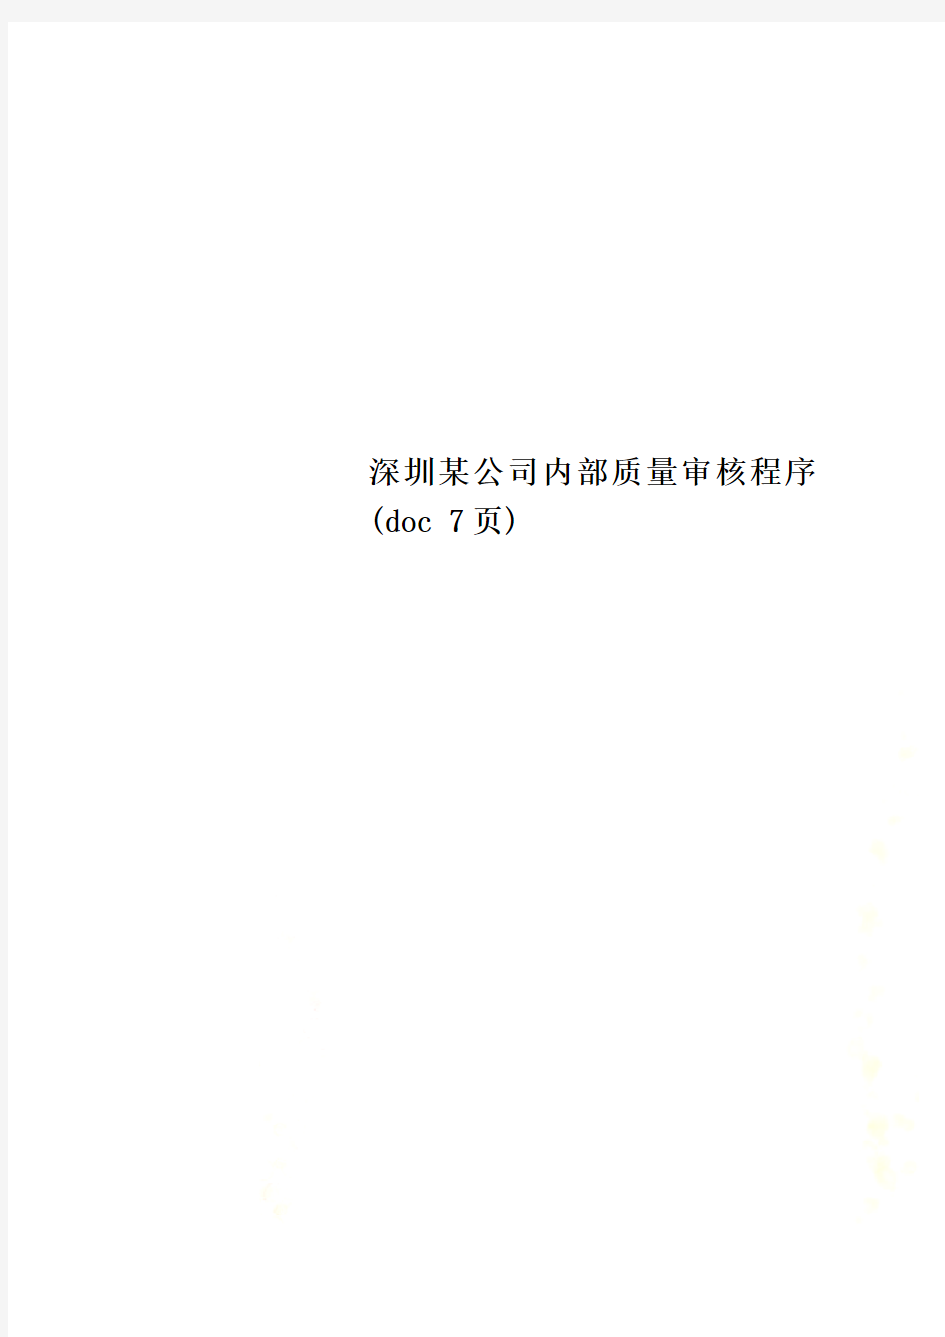 深圳某公司内部质量审核程序(doc 7页)